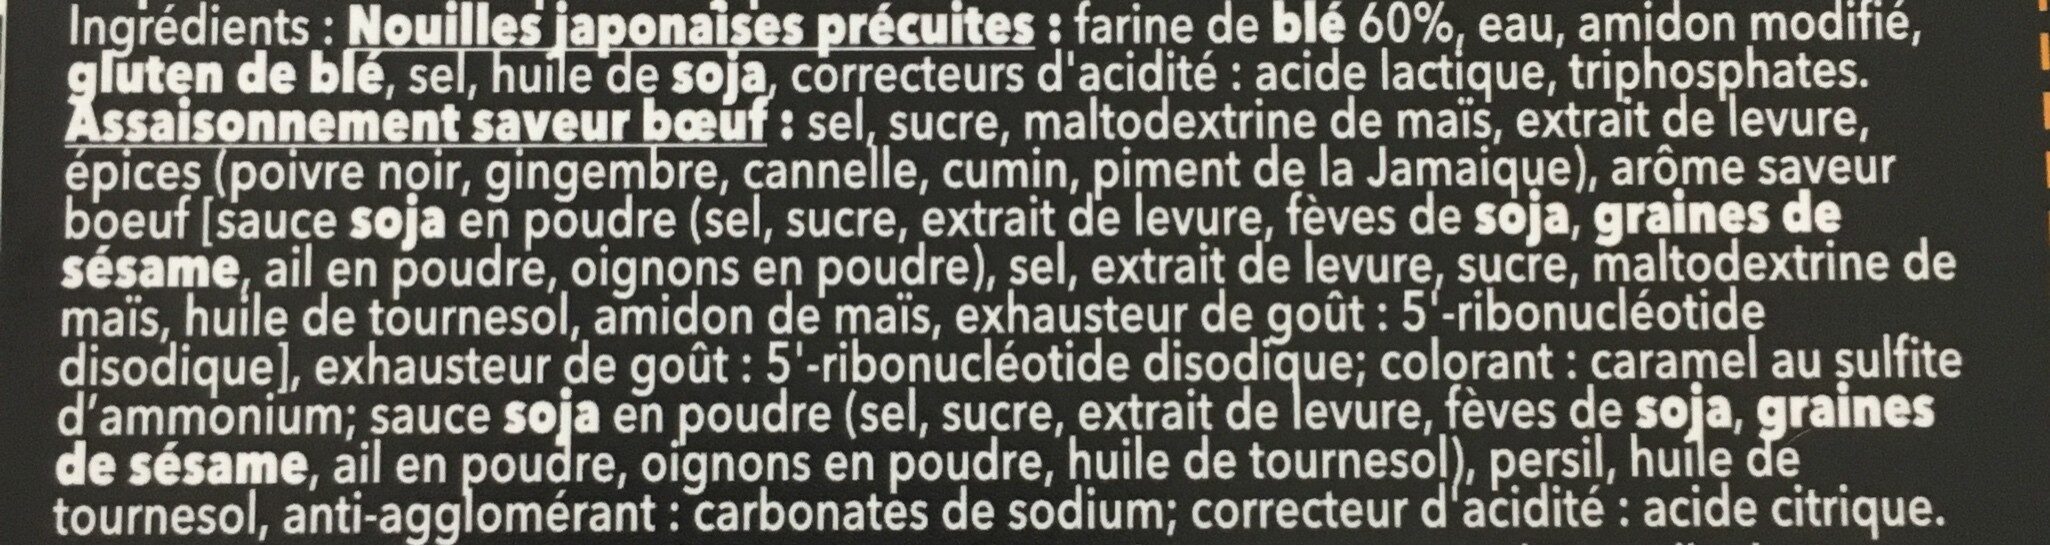 Ramen saveur boeuf - Ingredients - fr